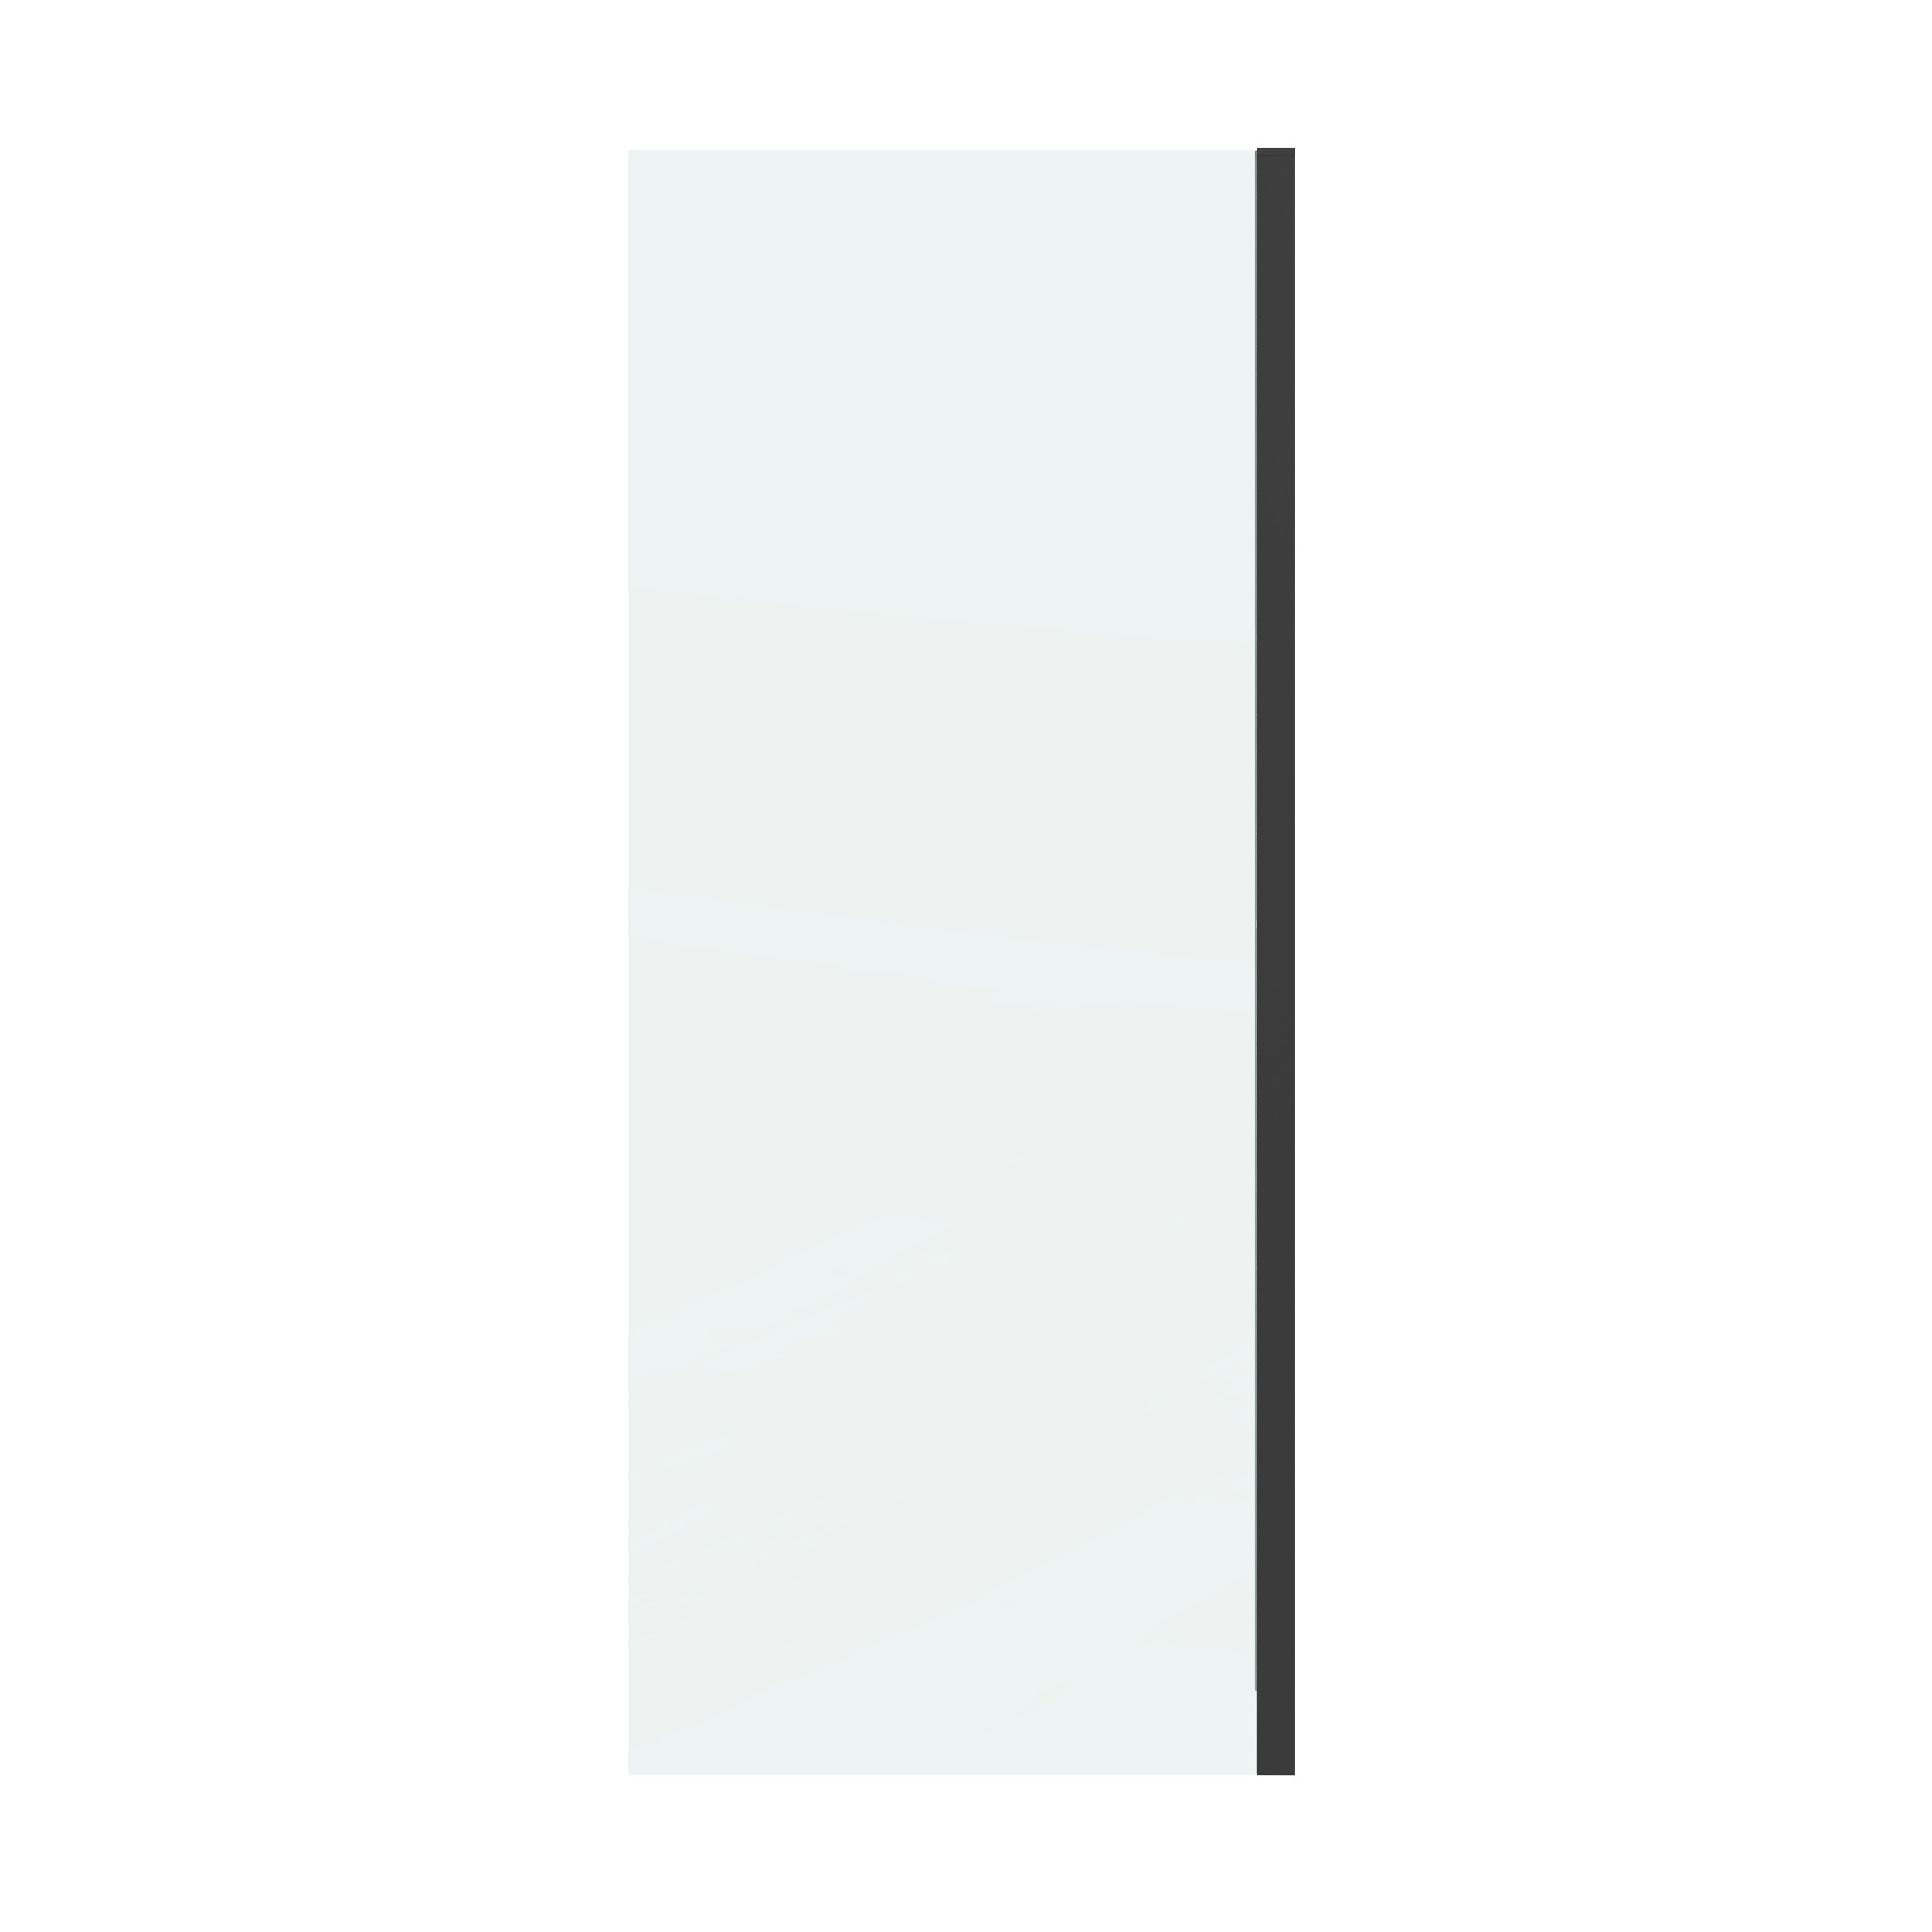 Боковая стенка Grossman Classic 70x195 200.K33.04.70.21.00 стекло прозрачное, профиль черный матовый